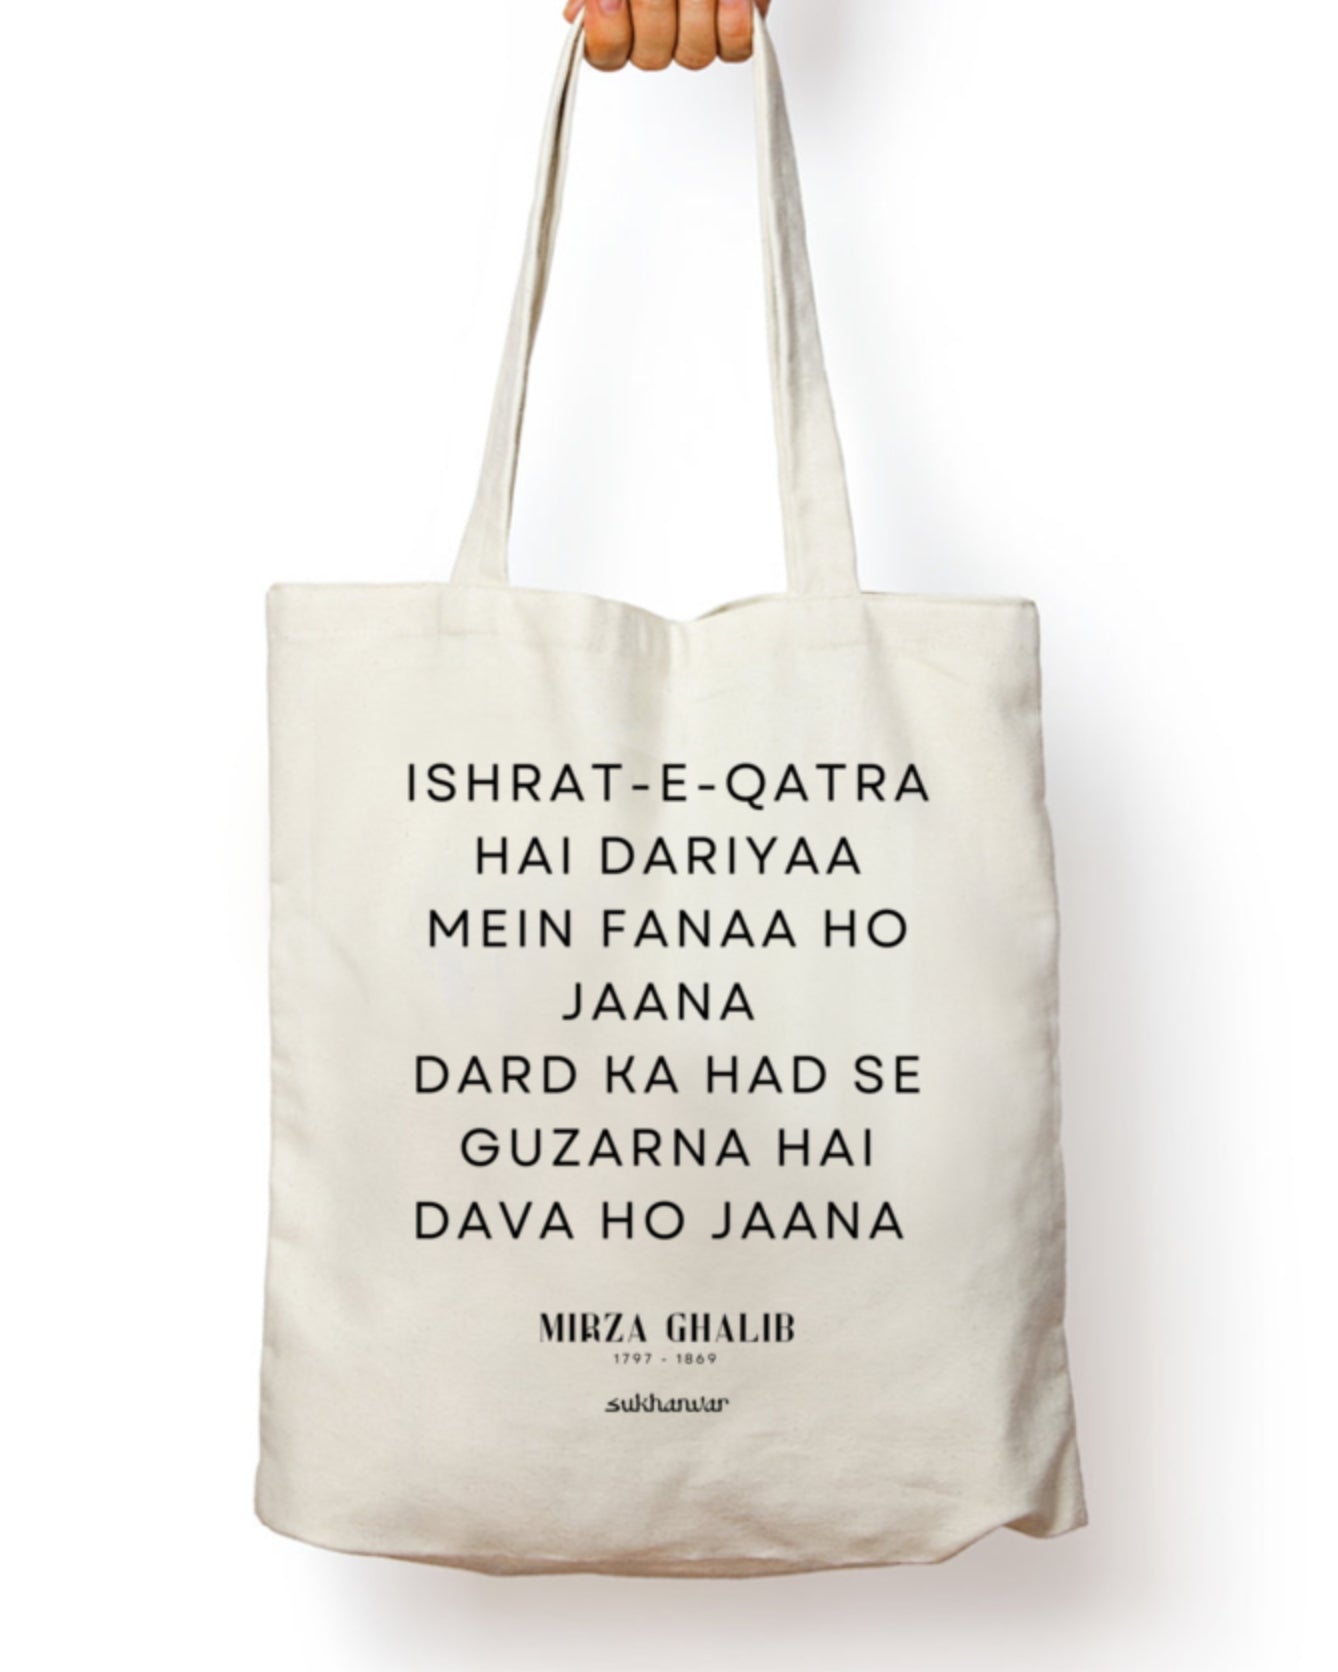 Mirza Ghalib Tote Bag (Dard Ka Hadd se Guzarna)